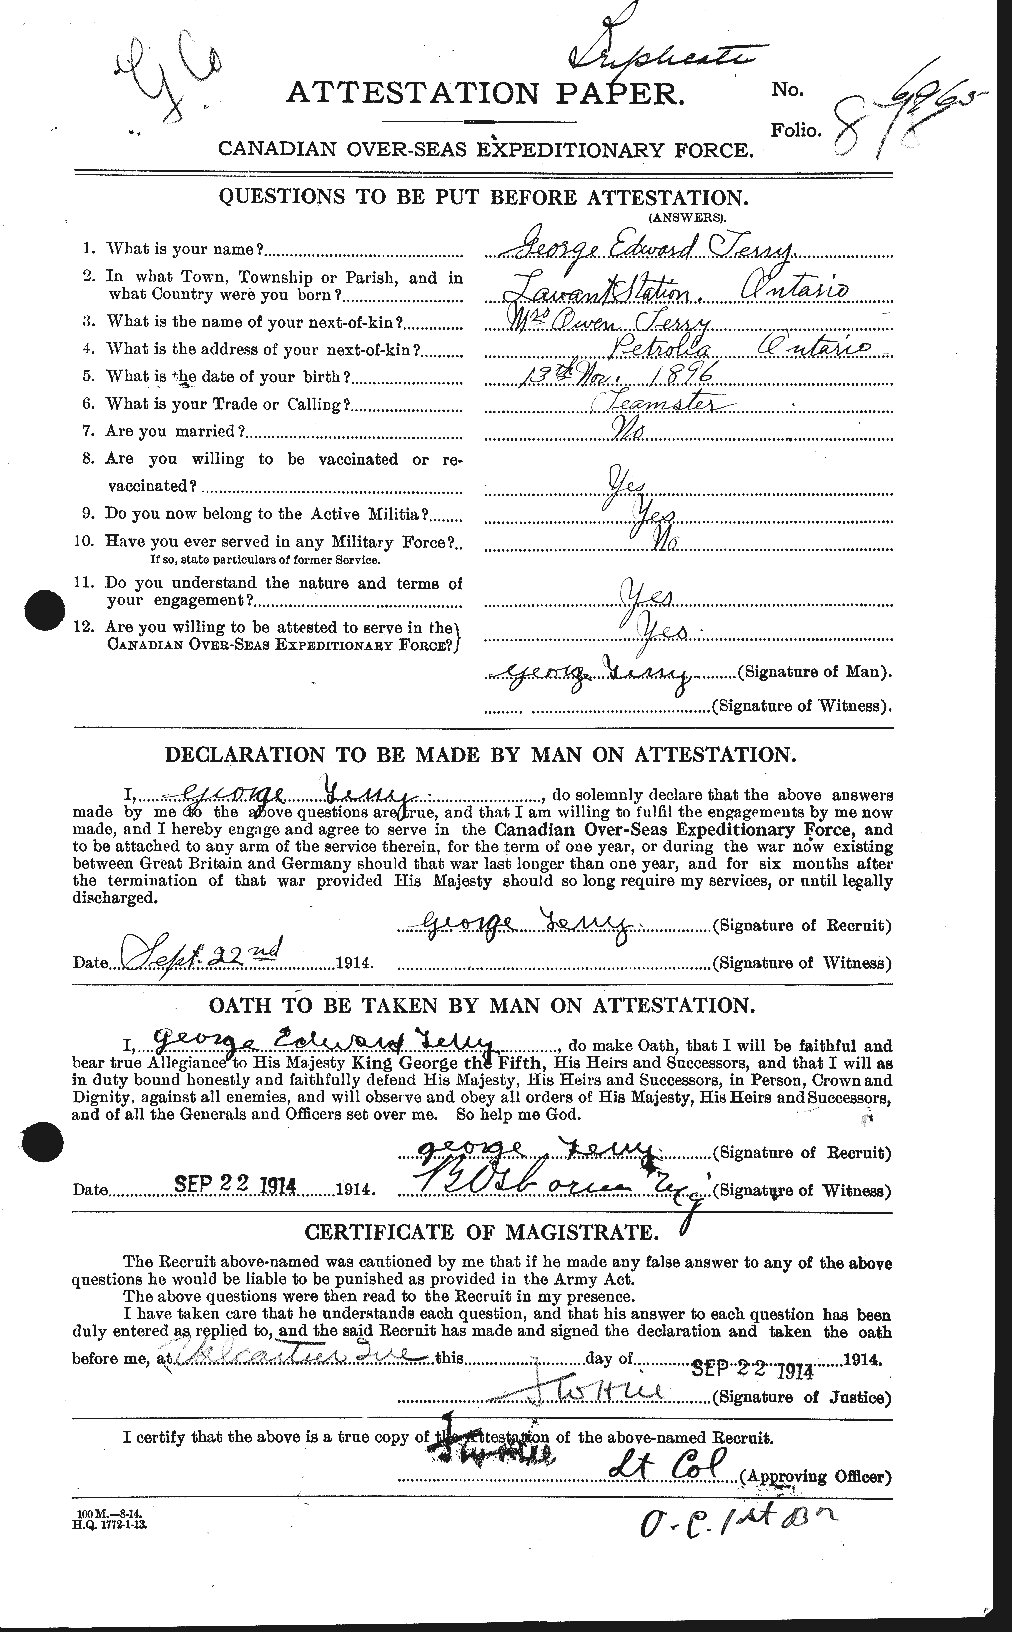 Dossiers du Personnel de la Première Guerre mondiale - CEC 629278a